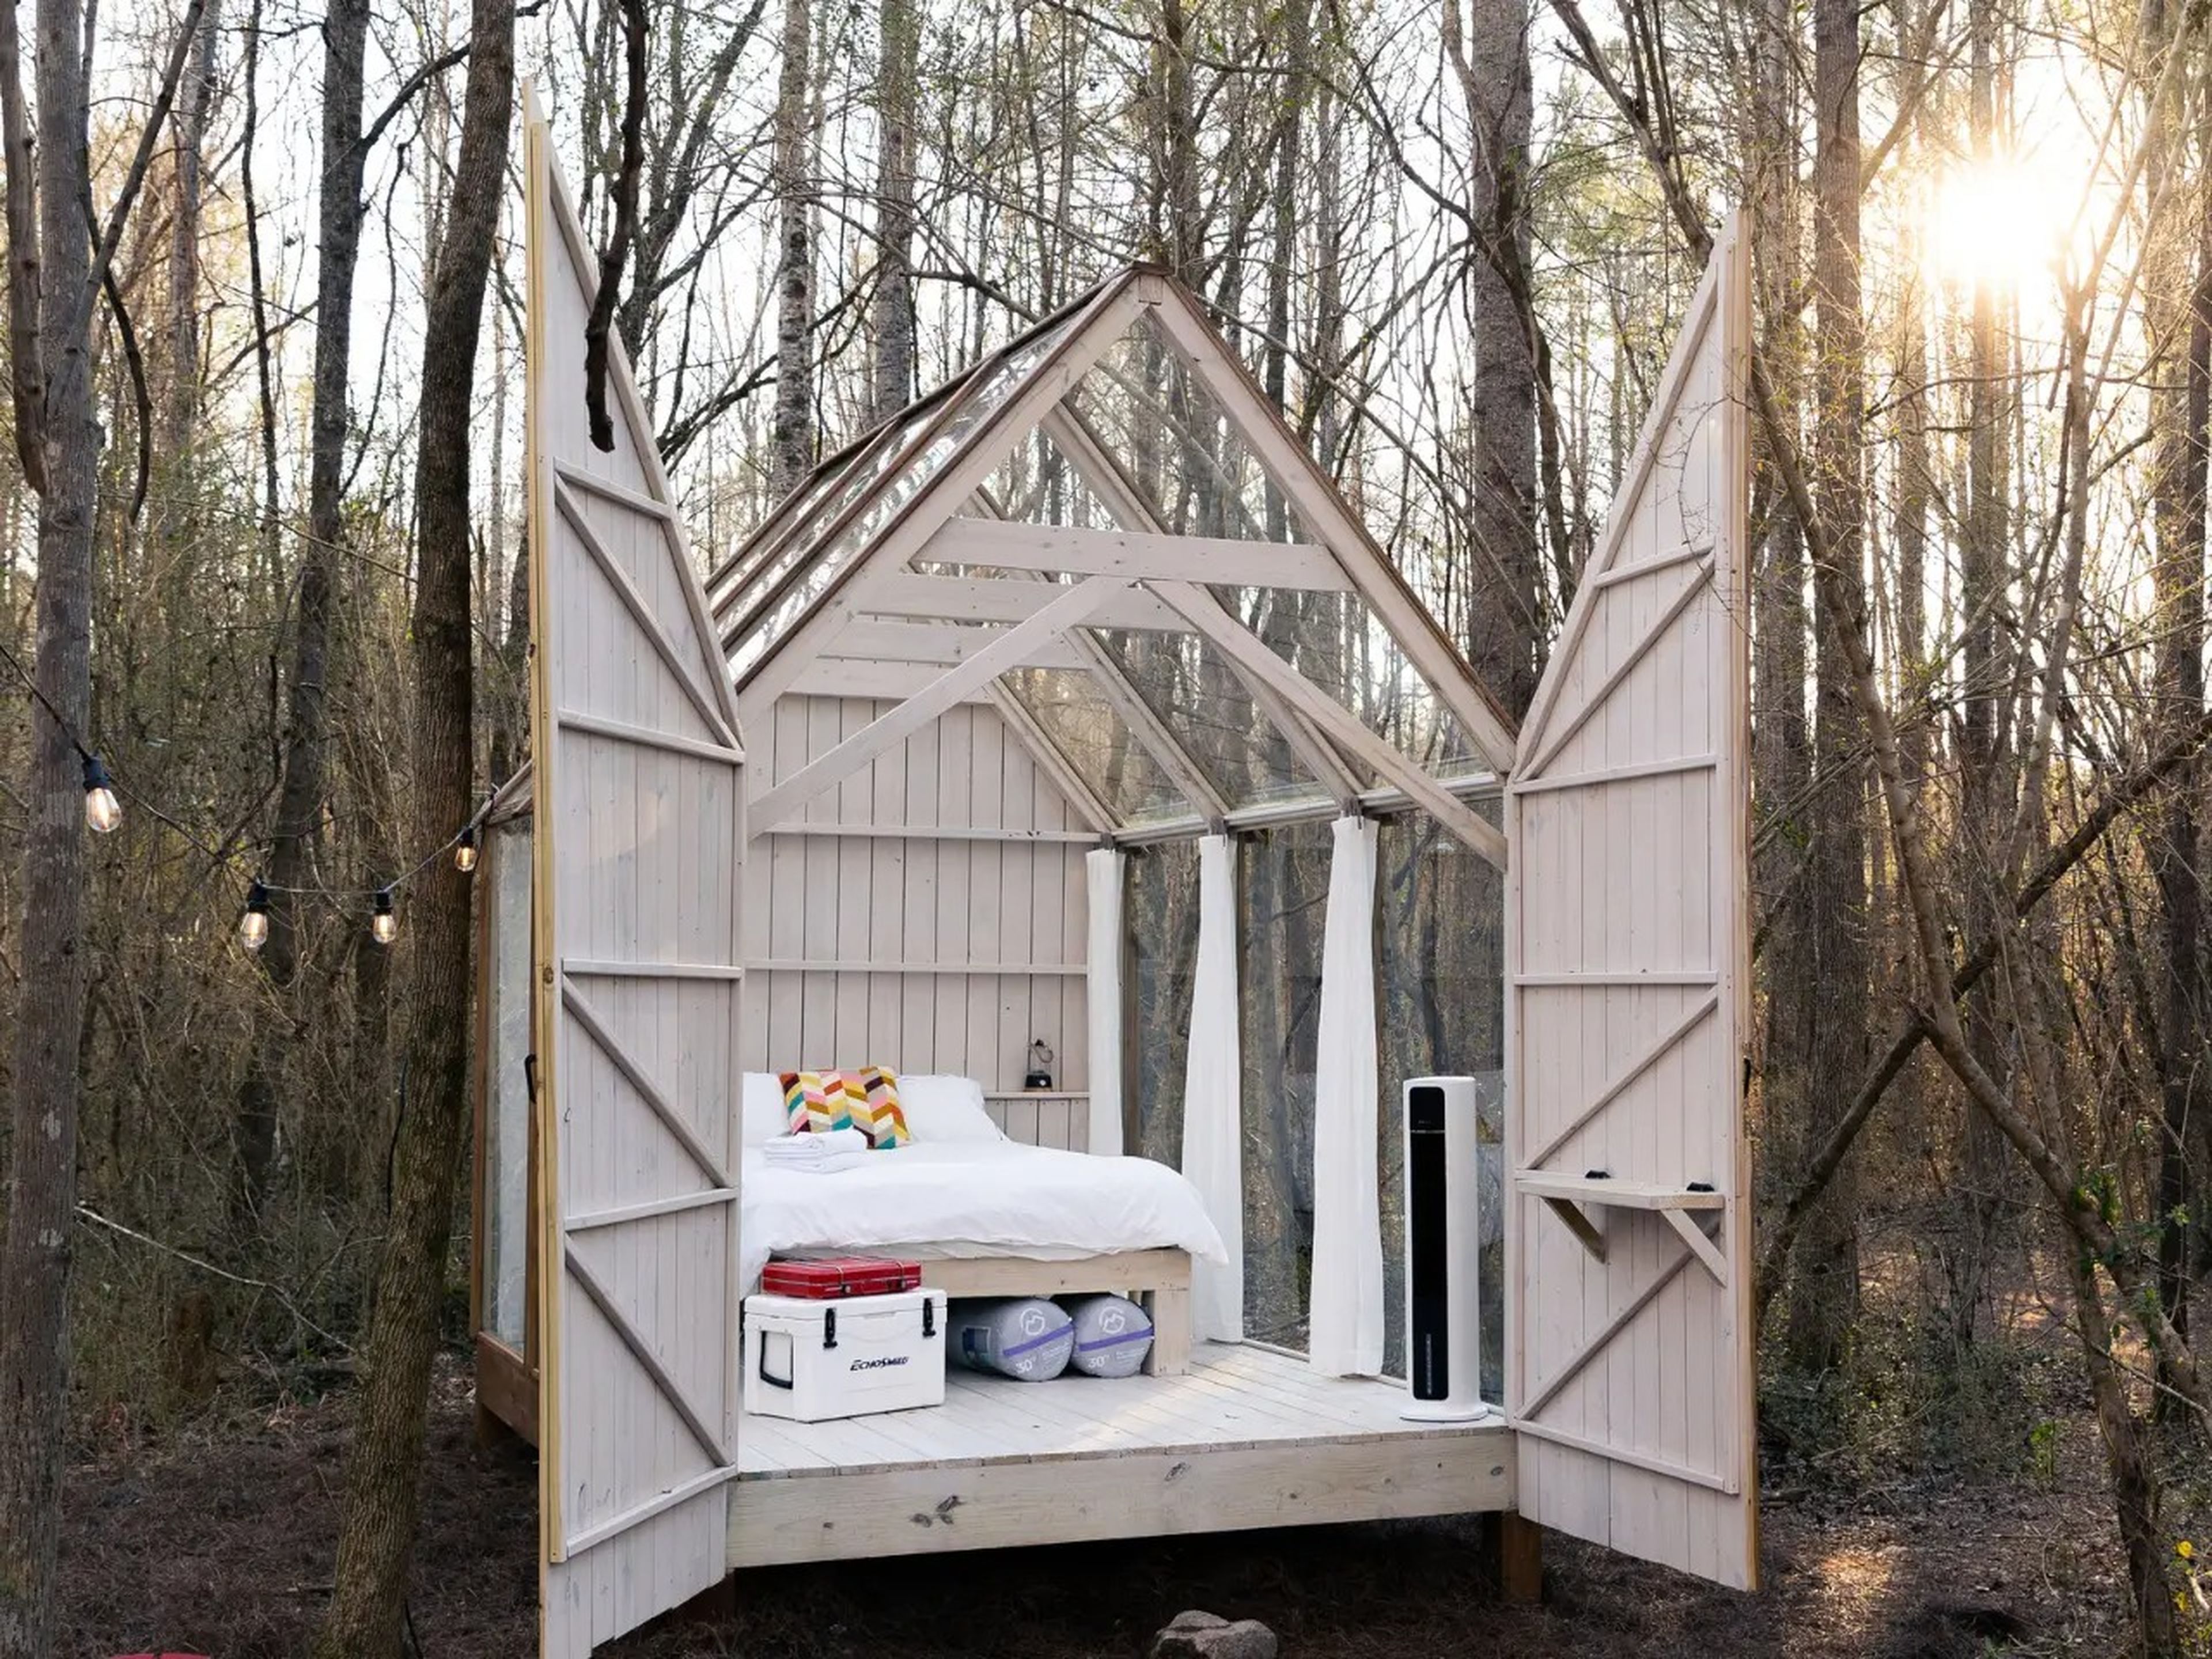 La pequeña cabaña de cristal de Rachel Boice se puede reservar en Airbnb.